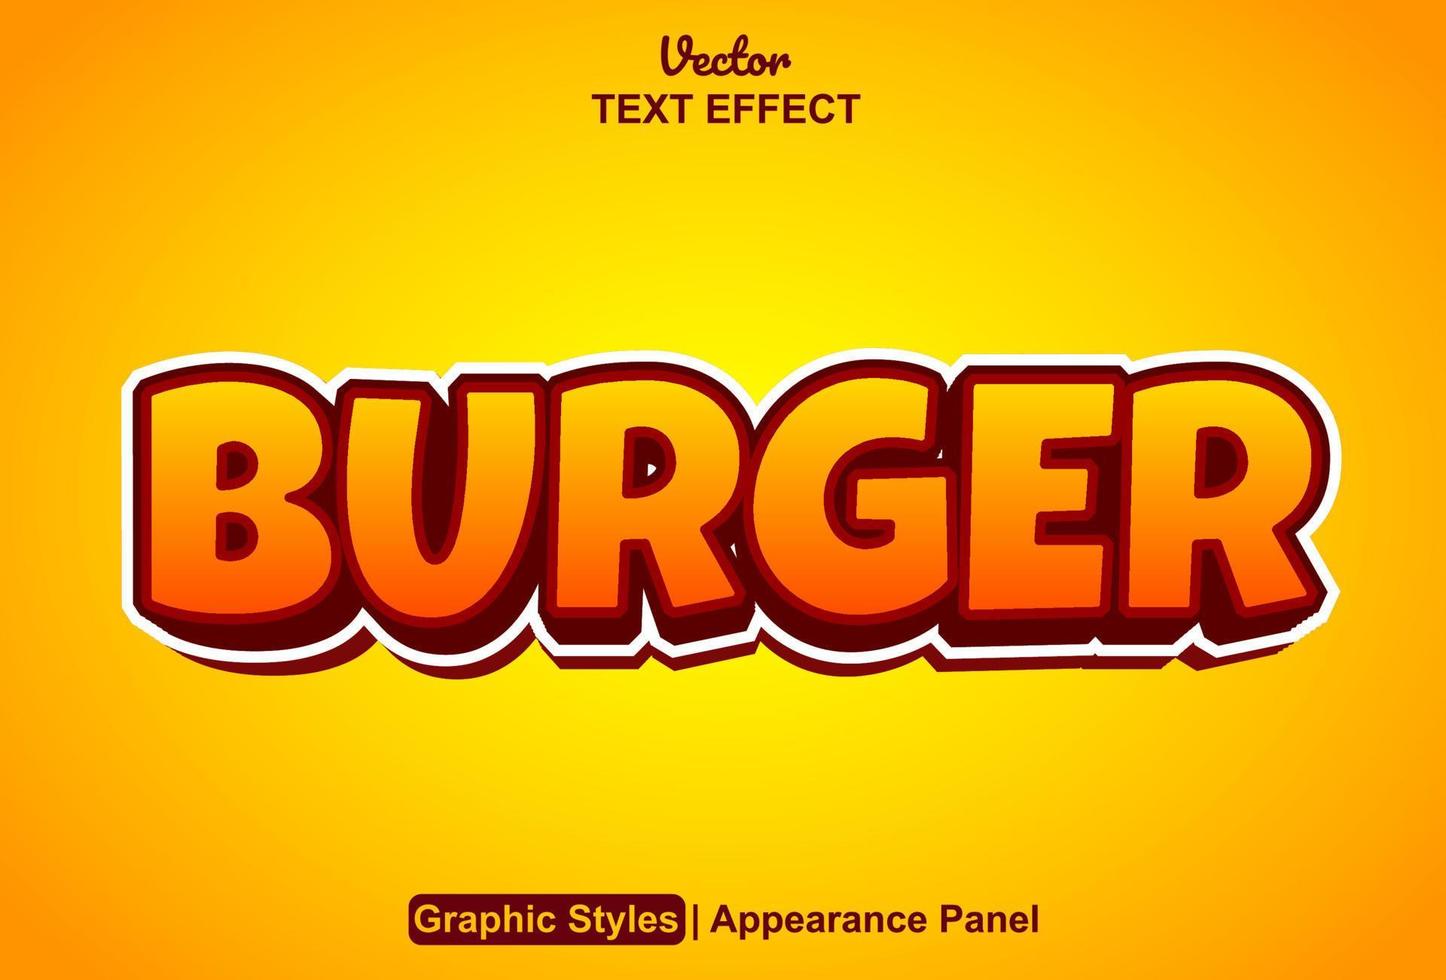 efeito de texto de hambúrguer com estilo gráfico e editável. vetor